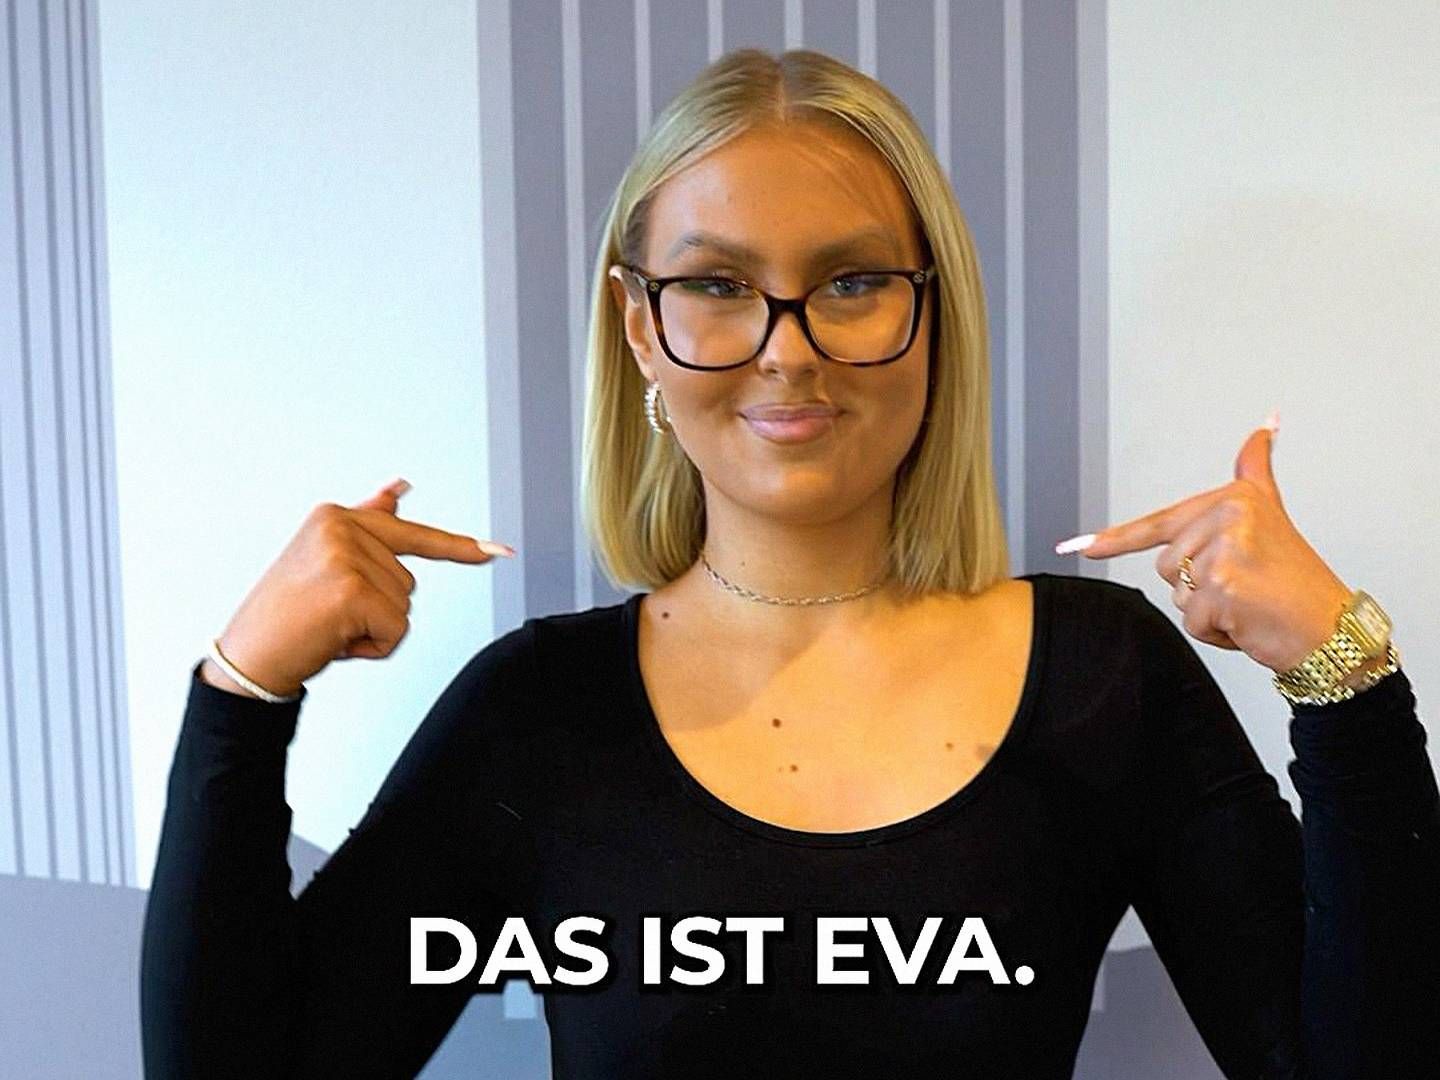 "Das ist Eva": Dieses Video der Sparkasse Dortmund hat auf TikTok schon 1,2 Millionen Klicks generiert. | Photo: Sparkasse Dortmund